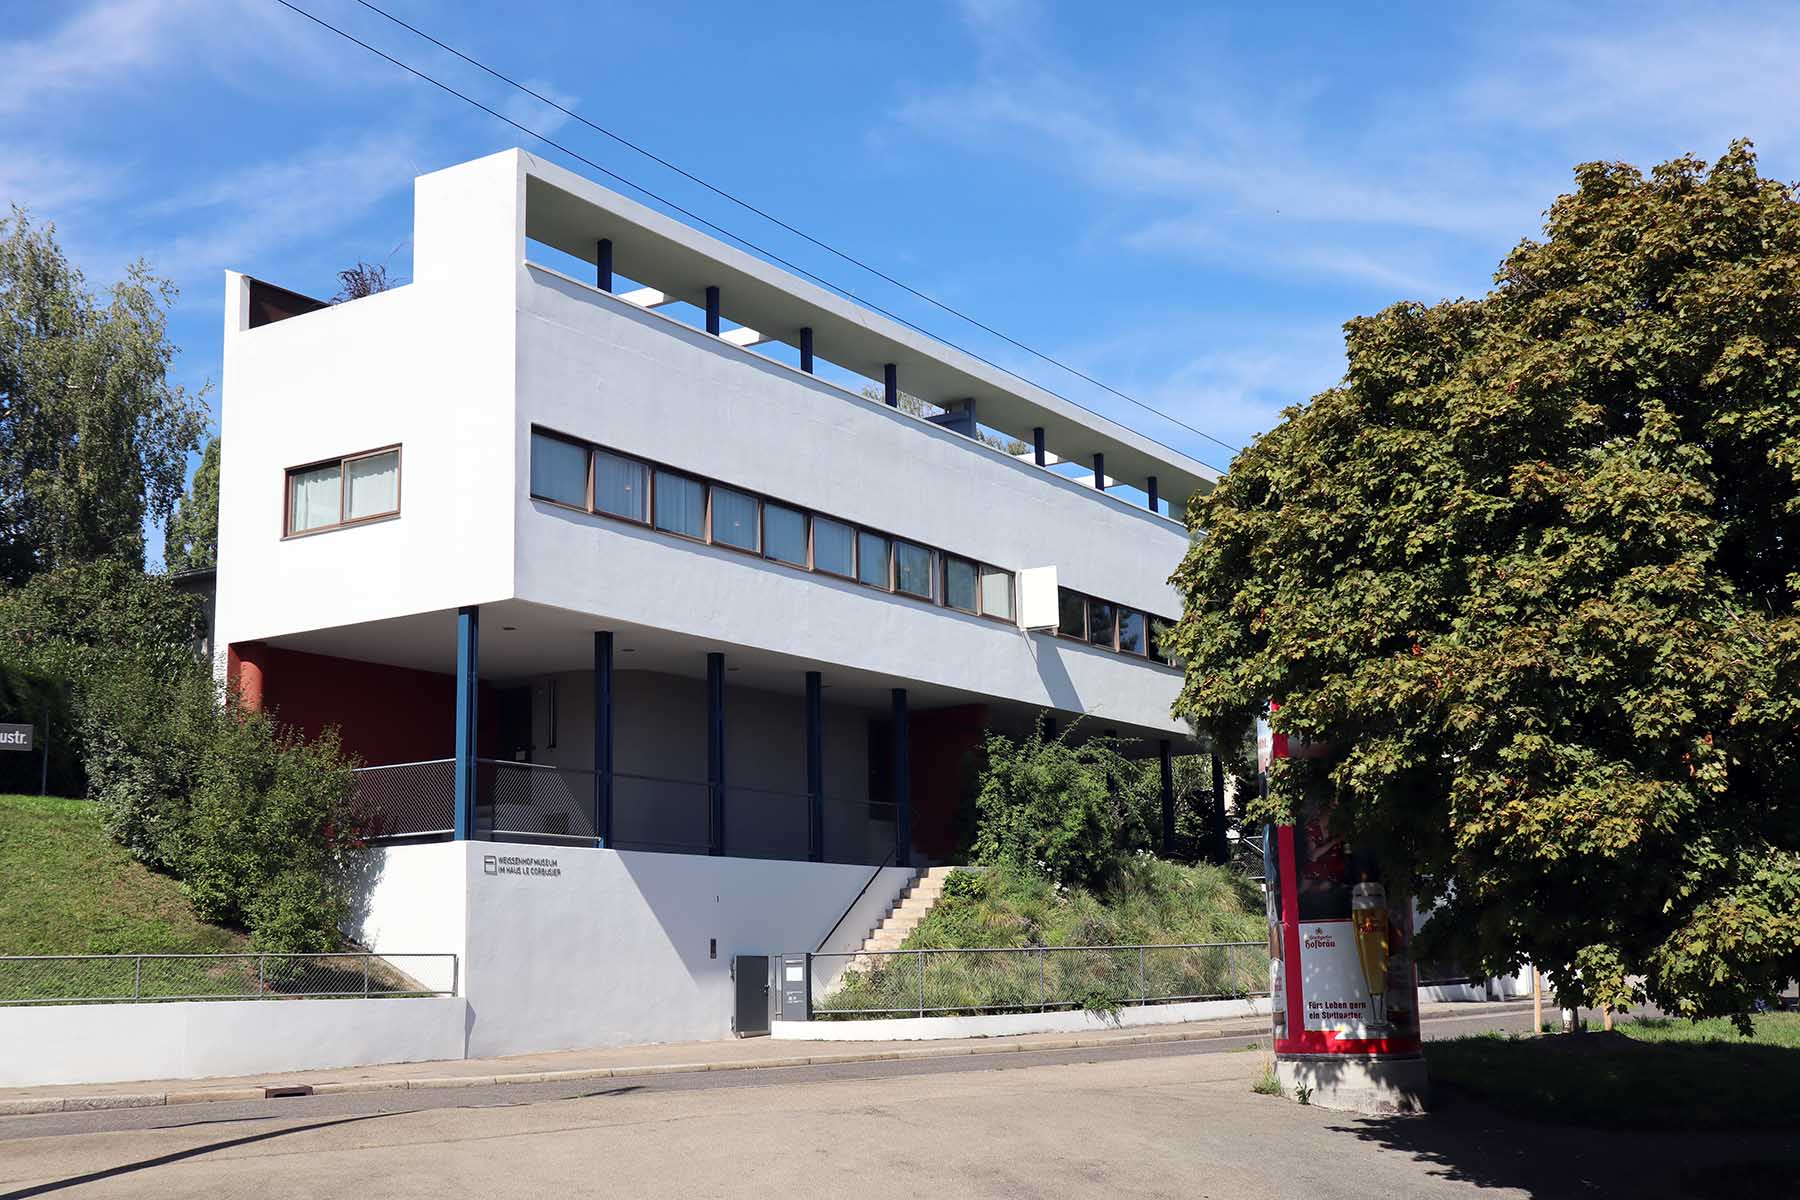 Die in den 1920er-Jahren von Le Corbusier formulierten "Fünf Punkte zu einer neuen Architektur" setzte dieser zusammen mit Pierre Jeanneret in dem Doppelhaus anschaulich um.